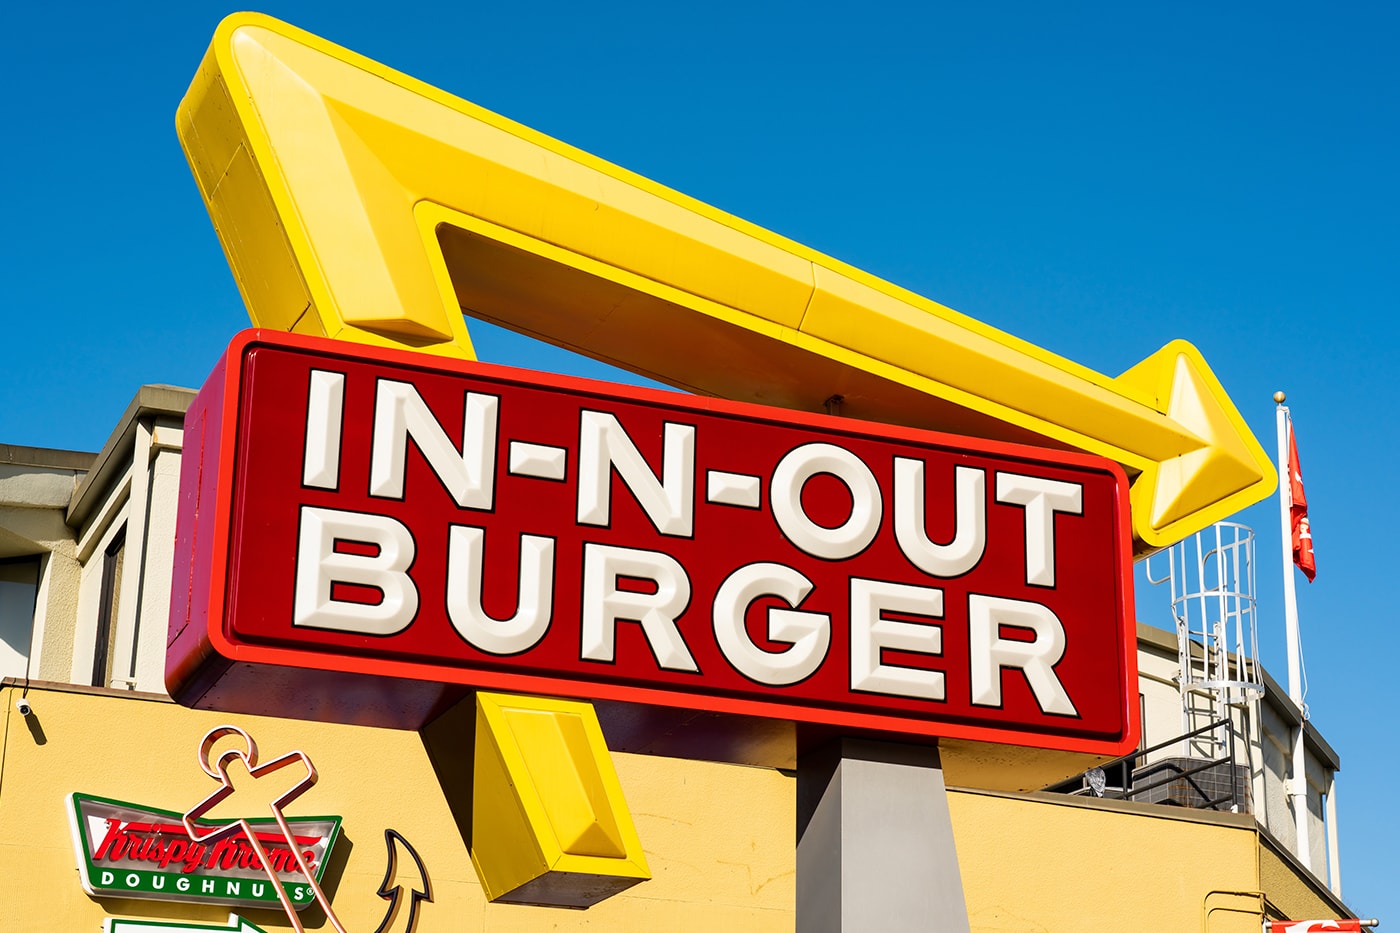 アメリカ・コロラド州でハンバーガーを求める人々が14時間待ちの行列を作る Colorado's First In-N-Out Burger Had a 14-Hour Line Up